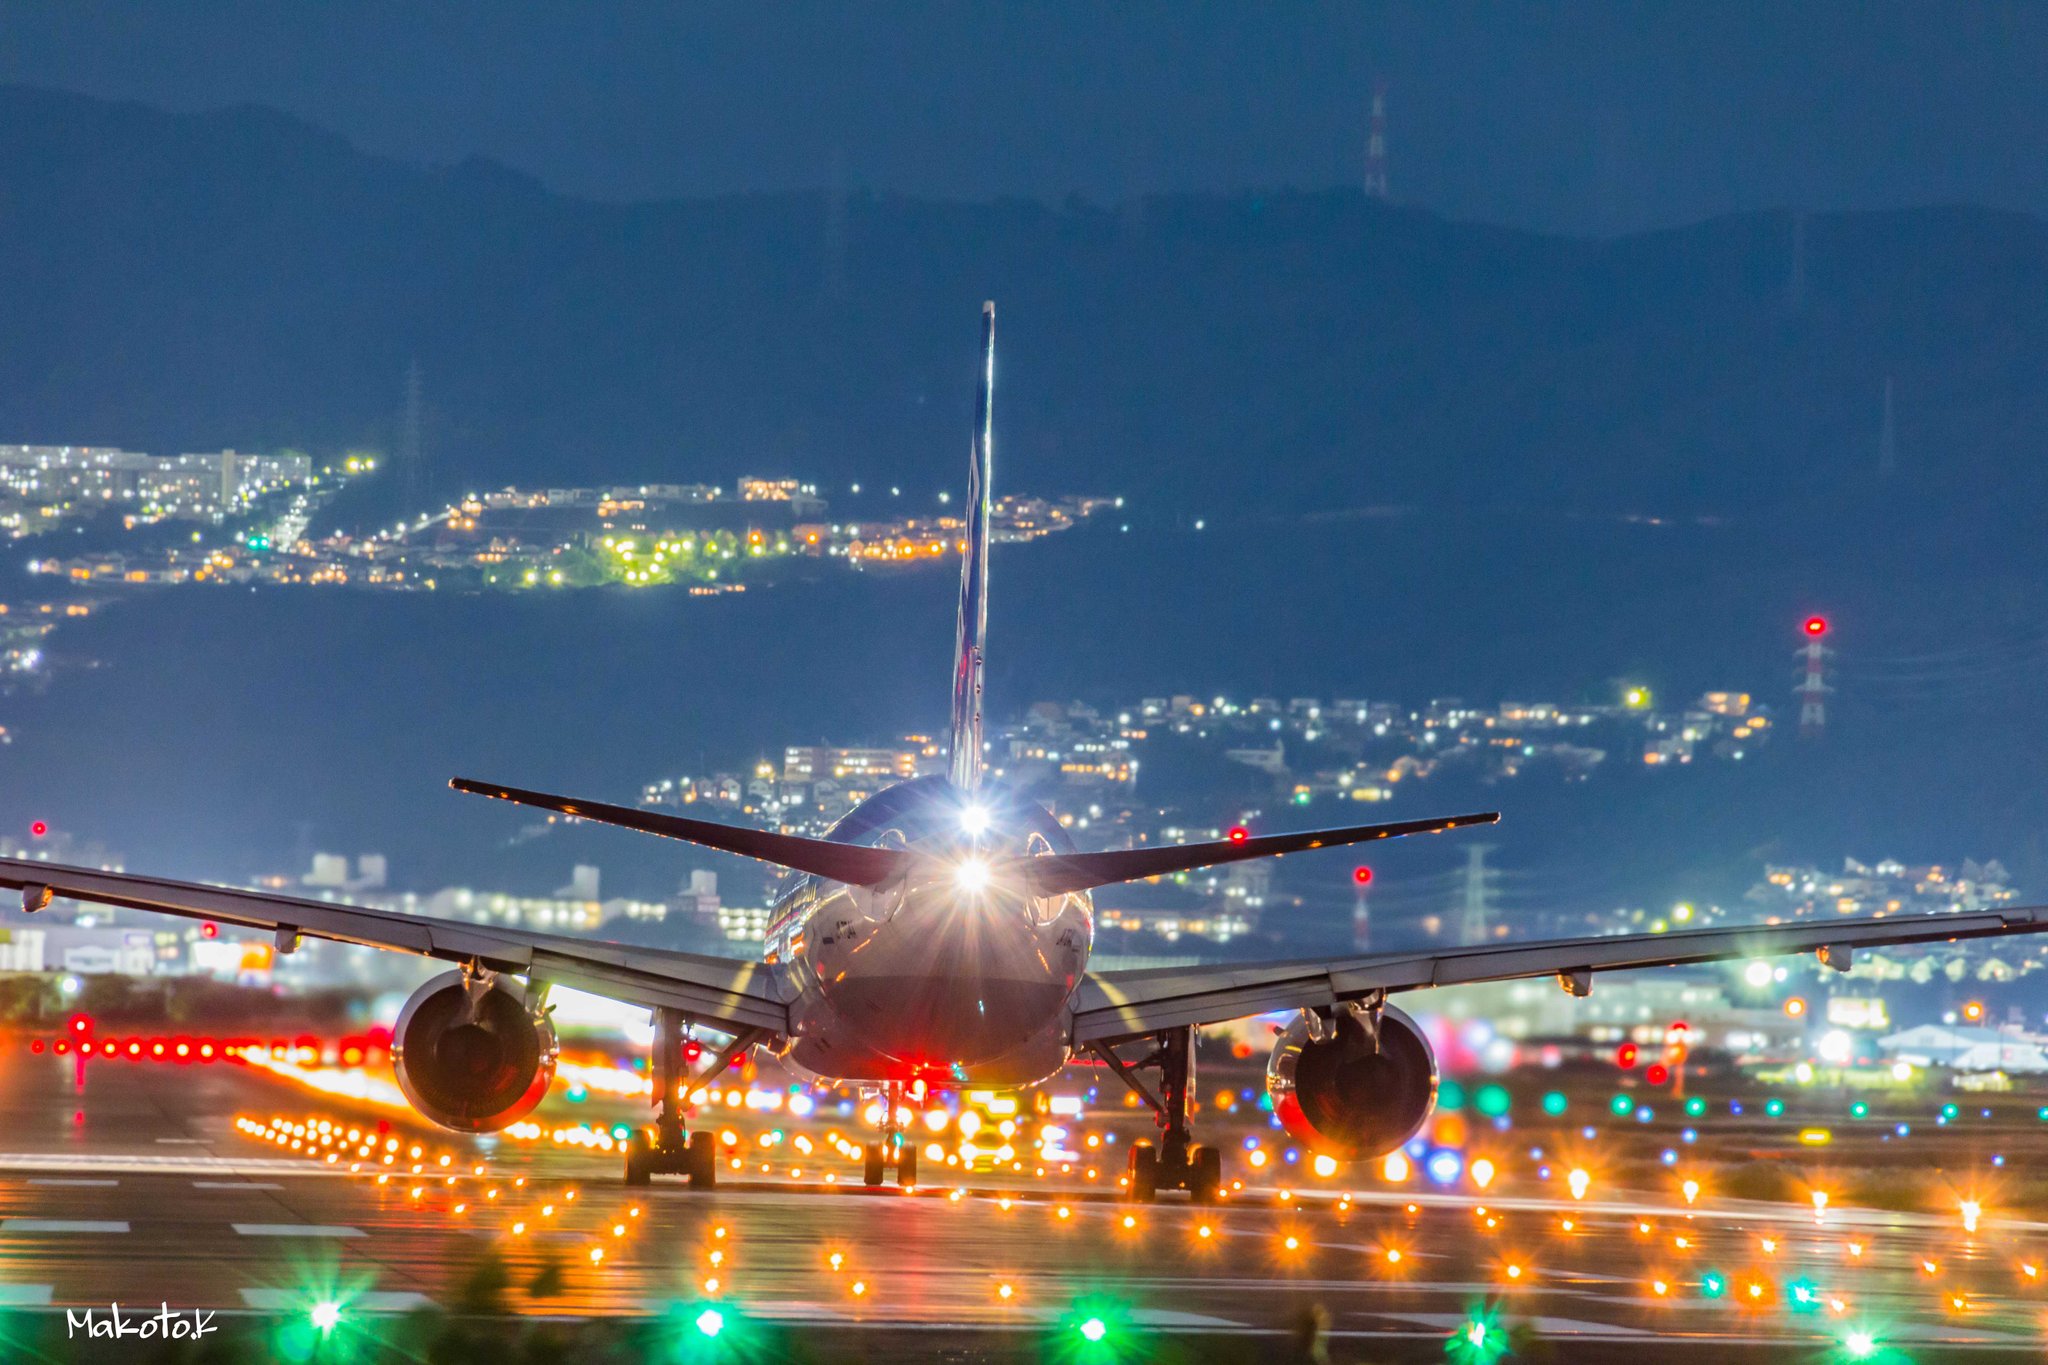 かけがわ まこと Twitterissa 伊丹空港の離陸写真の現時点でのベストショット４枚をまとめてみました 夜景も綺麗だし真上に飛行機が通る迫力もあるからカメラがなくても是非ここには遊びに行ってみて欲しい 飛行機 夜景 伊丹空港 大阪国際空港 Itm 写真好きな